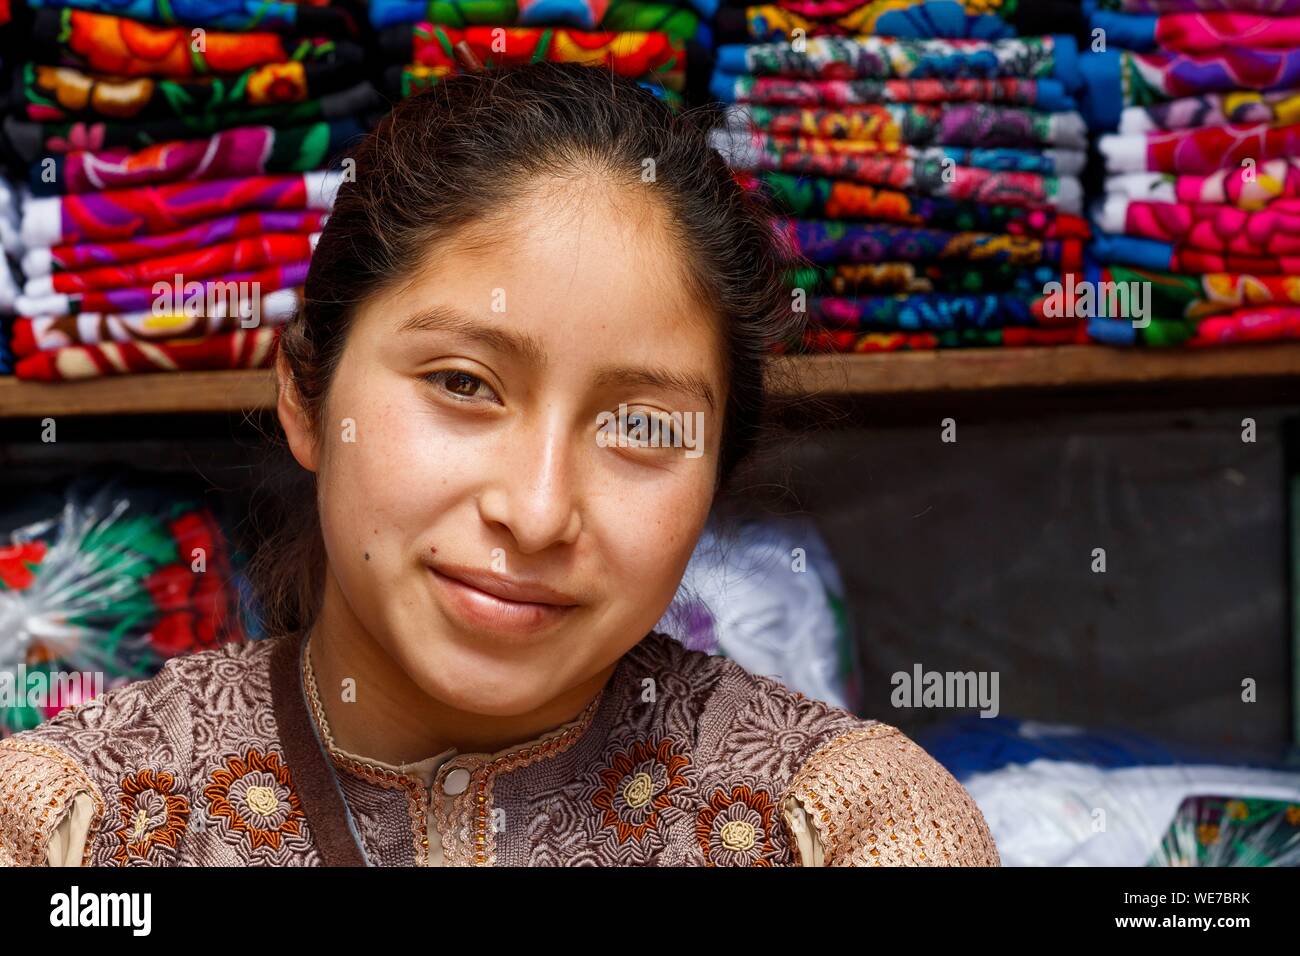 Mexico, Chiapas state, San Cristobal de las Casas, Tzotzil woman portrait Stock Photo